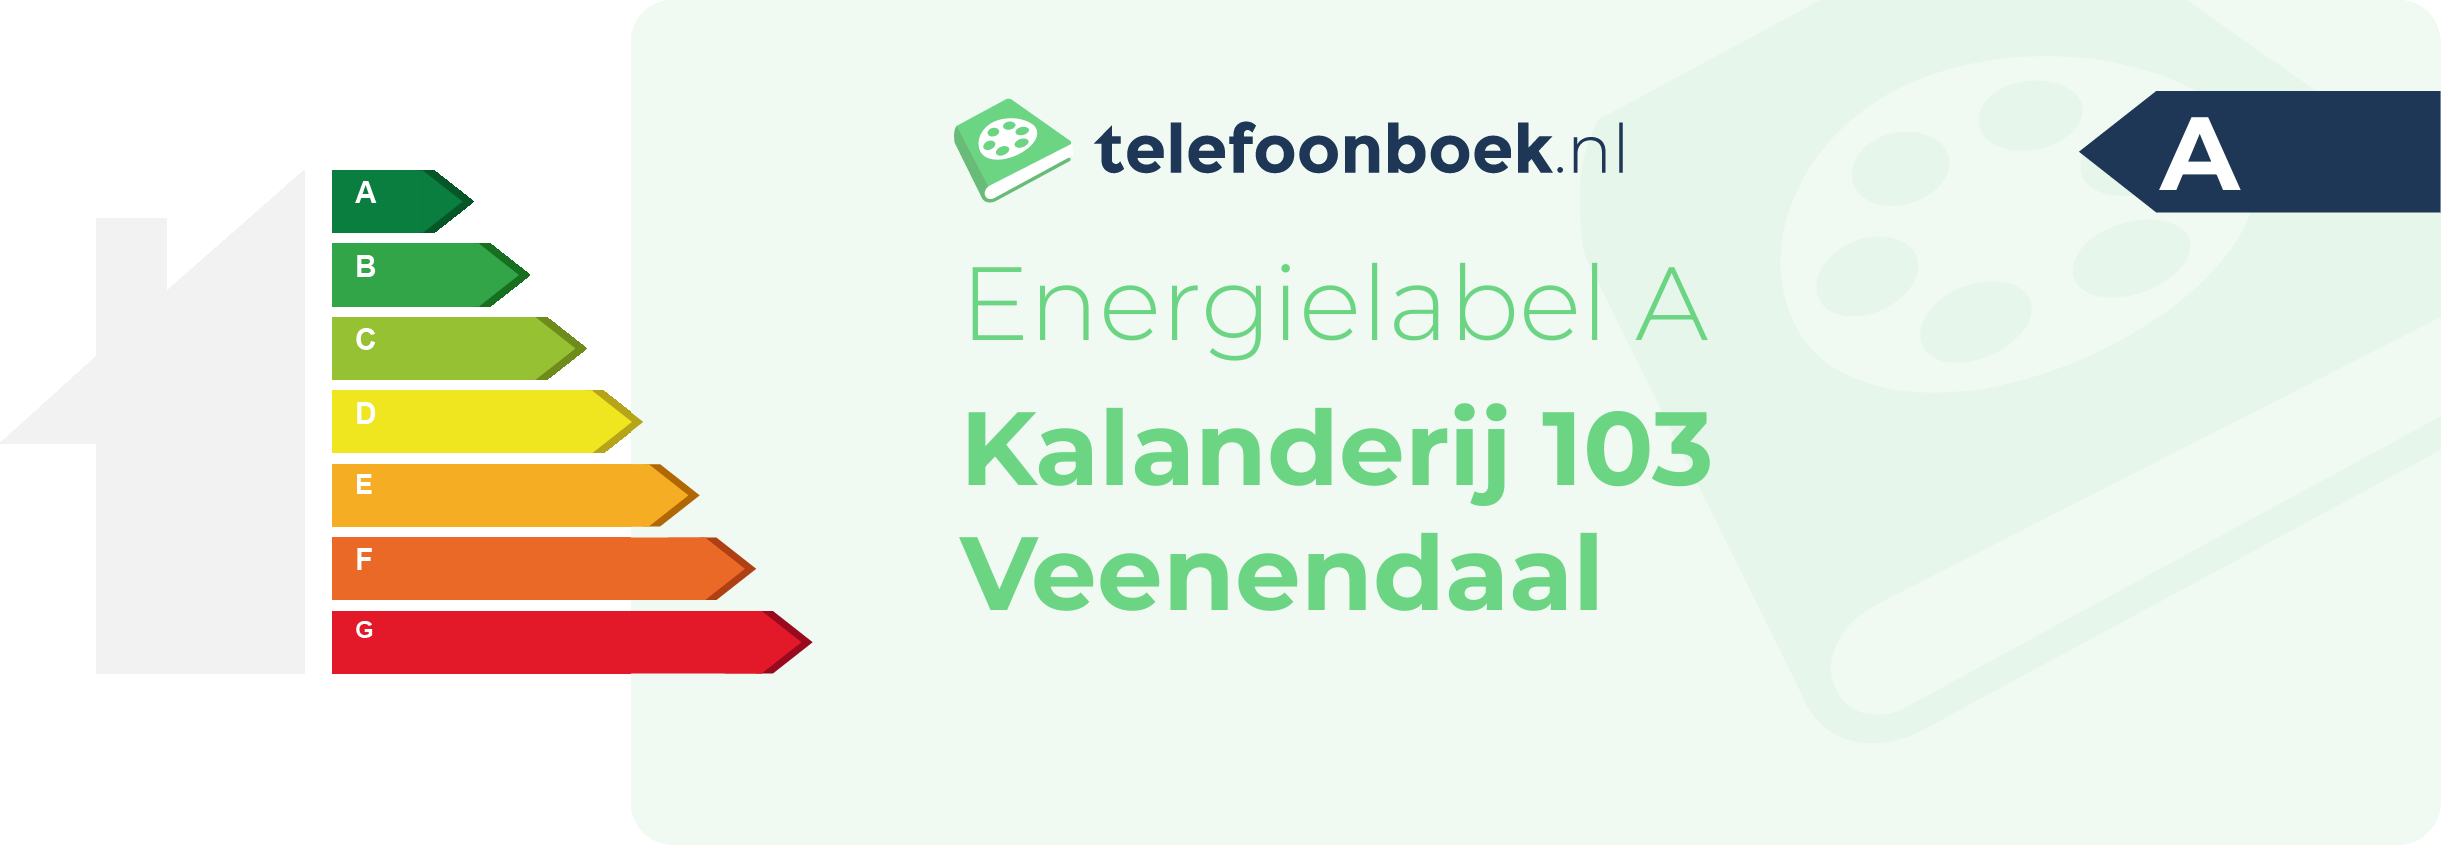 Energielabel Kalanderij 103 Veenendaal